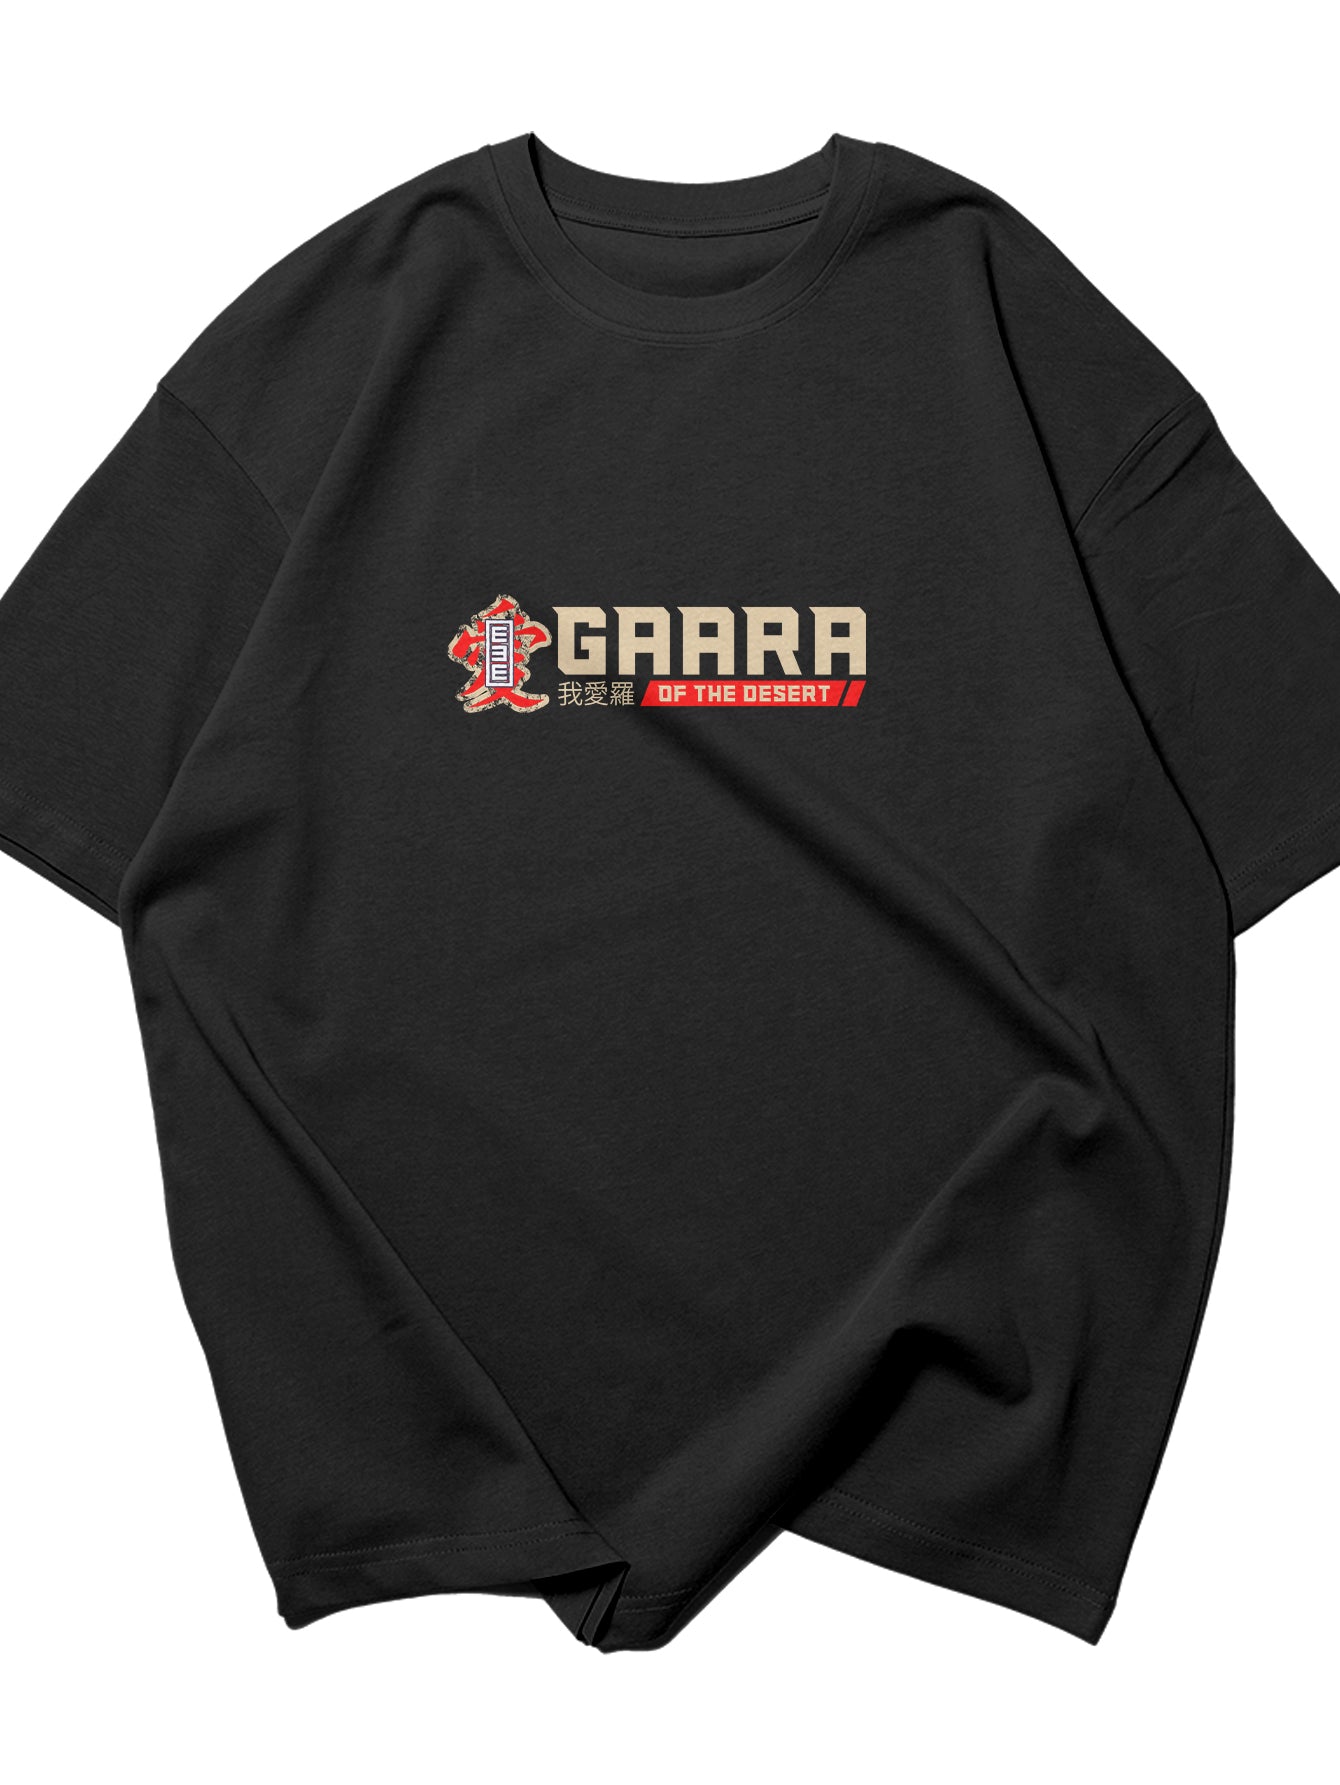 Gaara Spirit Urban Fashion Oversize T-Shirt